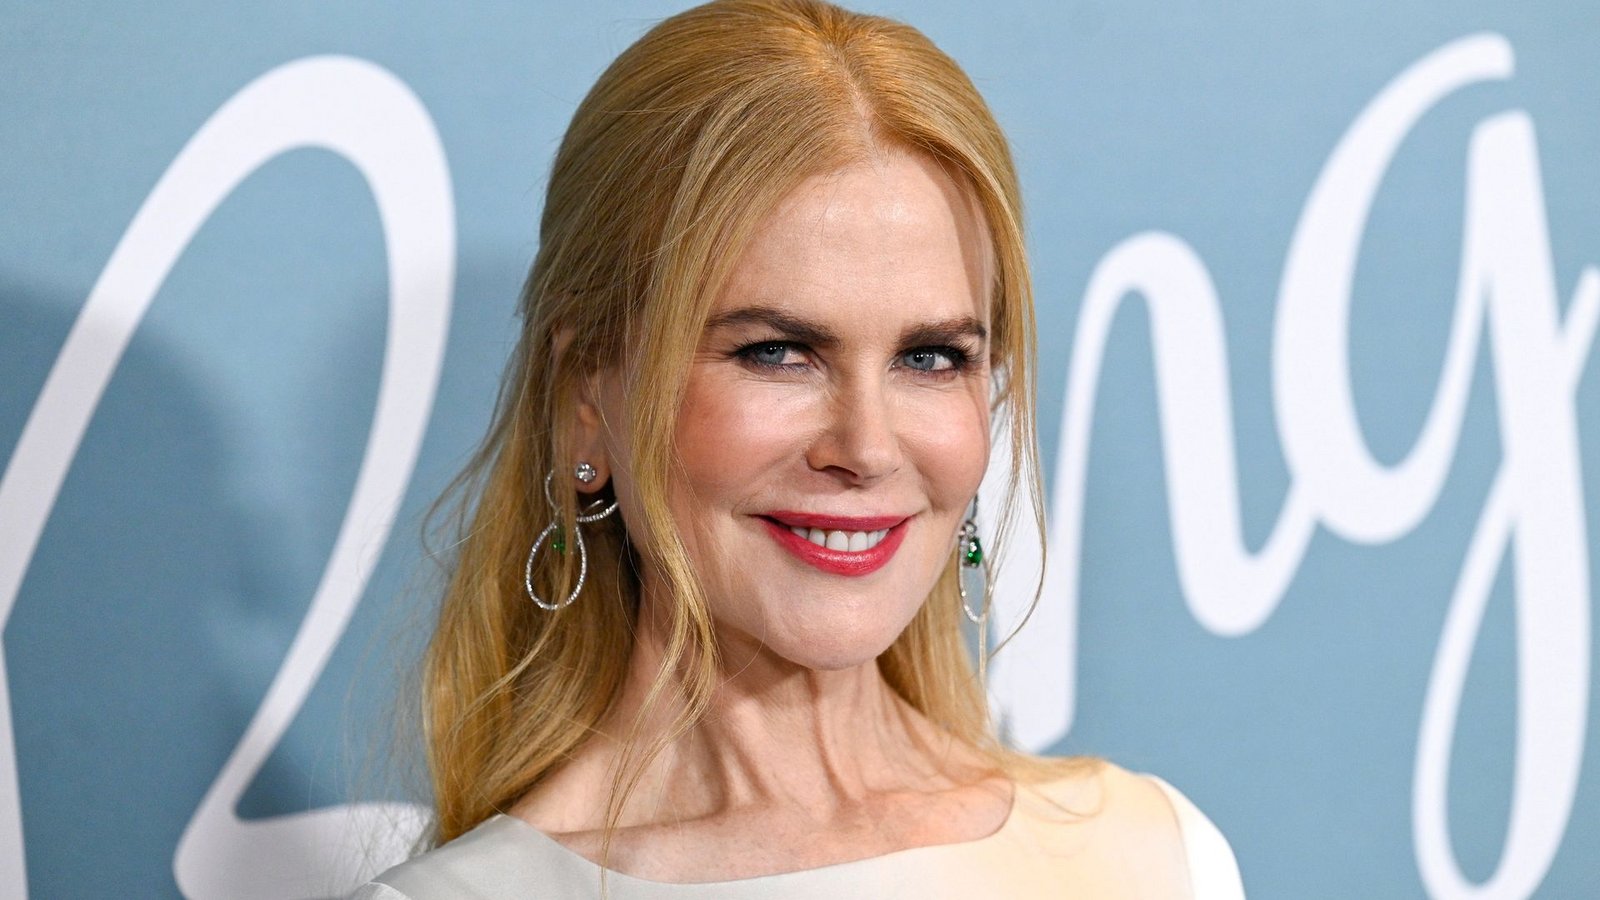 Schauspielerin Nicole Kidman soll einen Preis für ihr Lebenswerk erhalten.Foto: Evan Agostini/Invision via AP/dpa